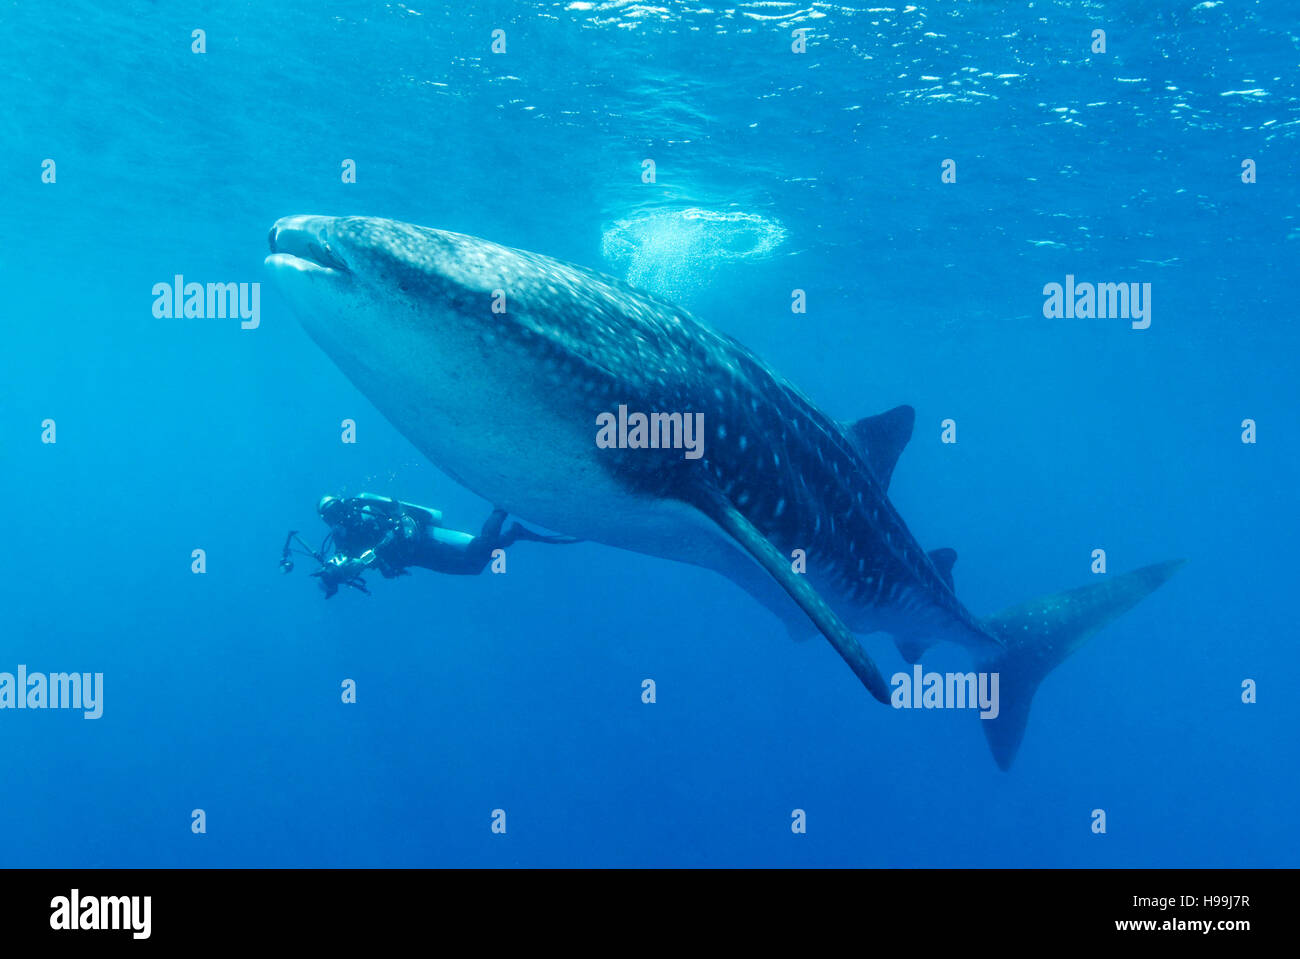 Squalo Balena con scuba diver, fotografo subacqueo, l'isola di Malpelo, Colombia, Oriente Oceano Pacifico Foto Stock